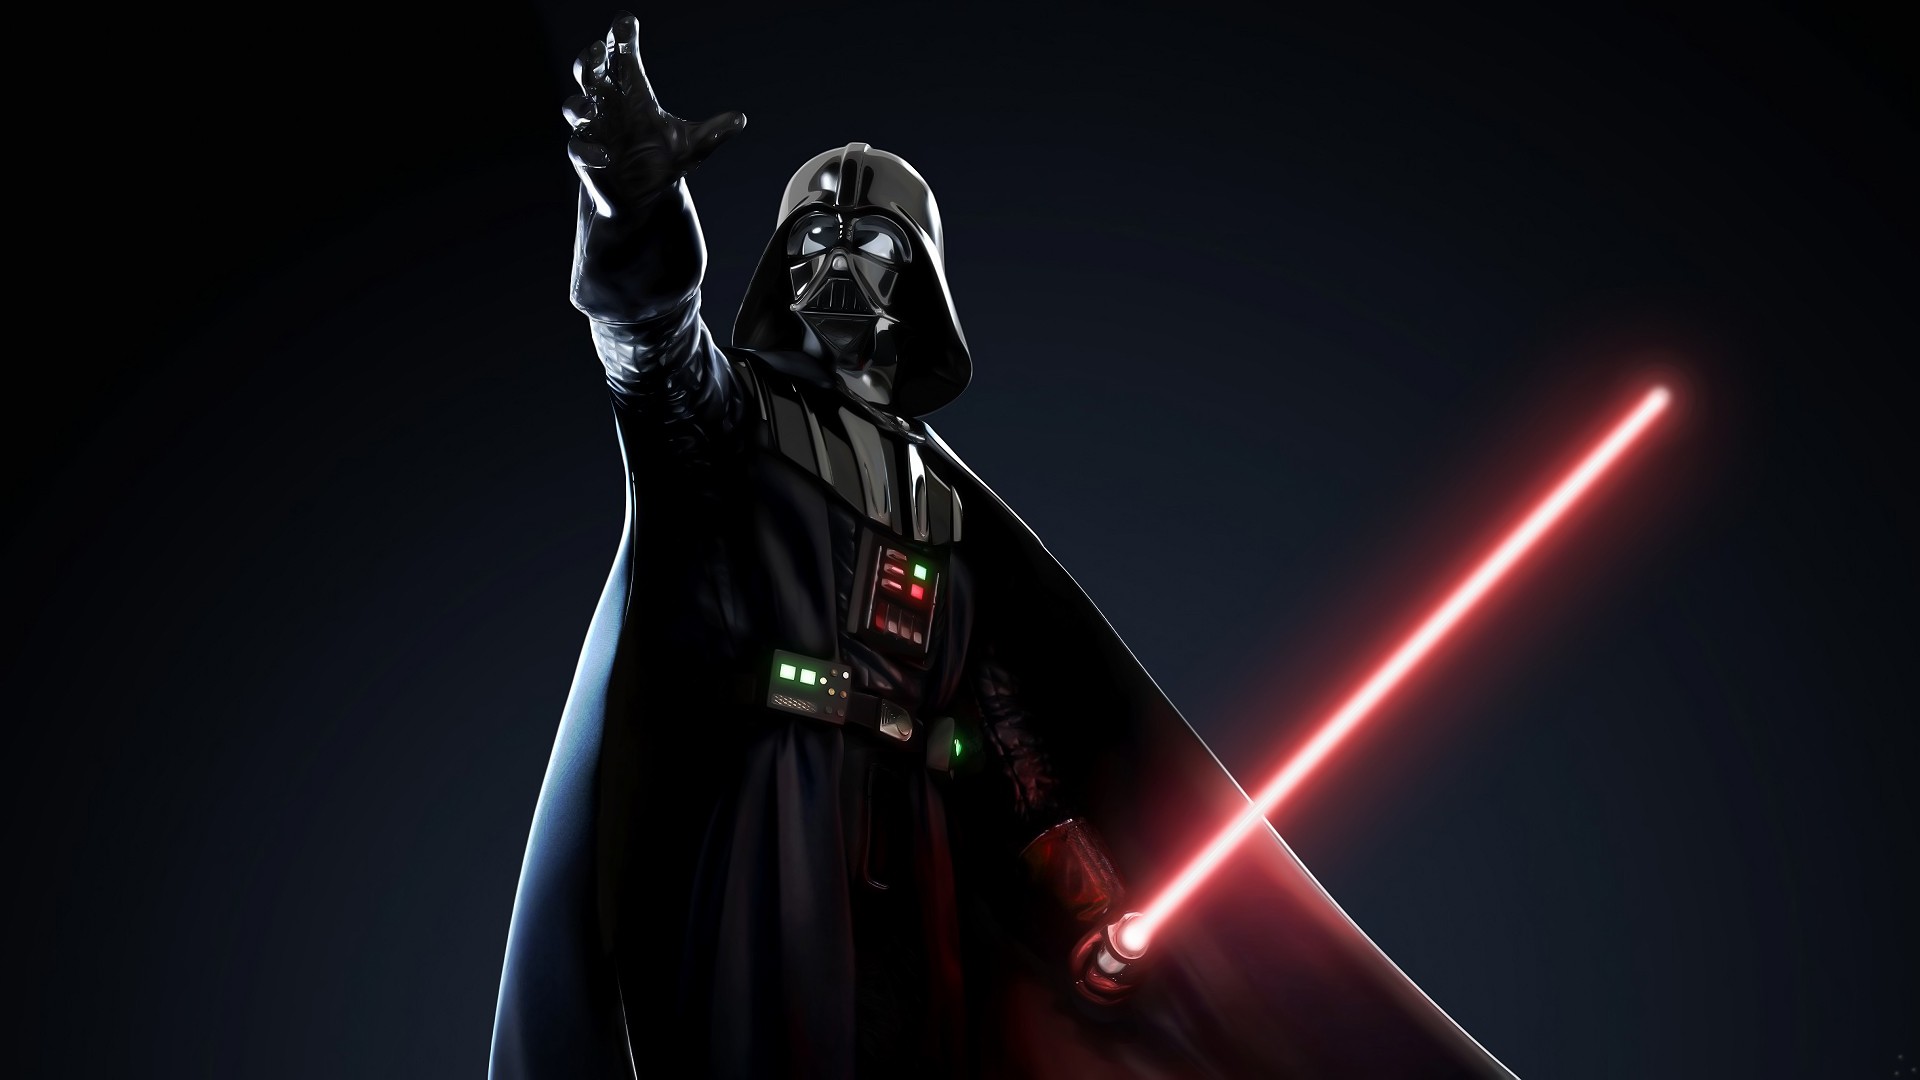 Fond Ecran Darth Vader Lightsabers Red Star Wars Wallpaper HD